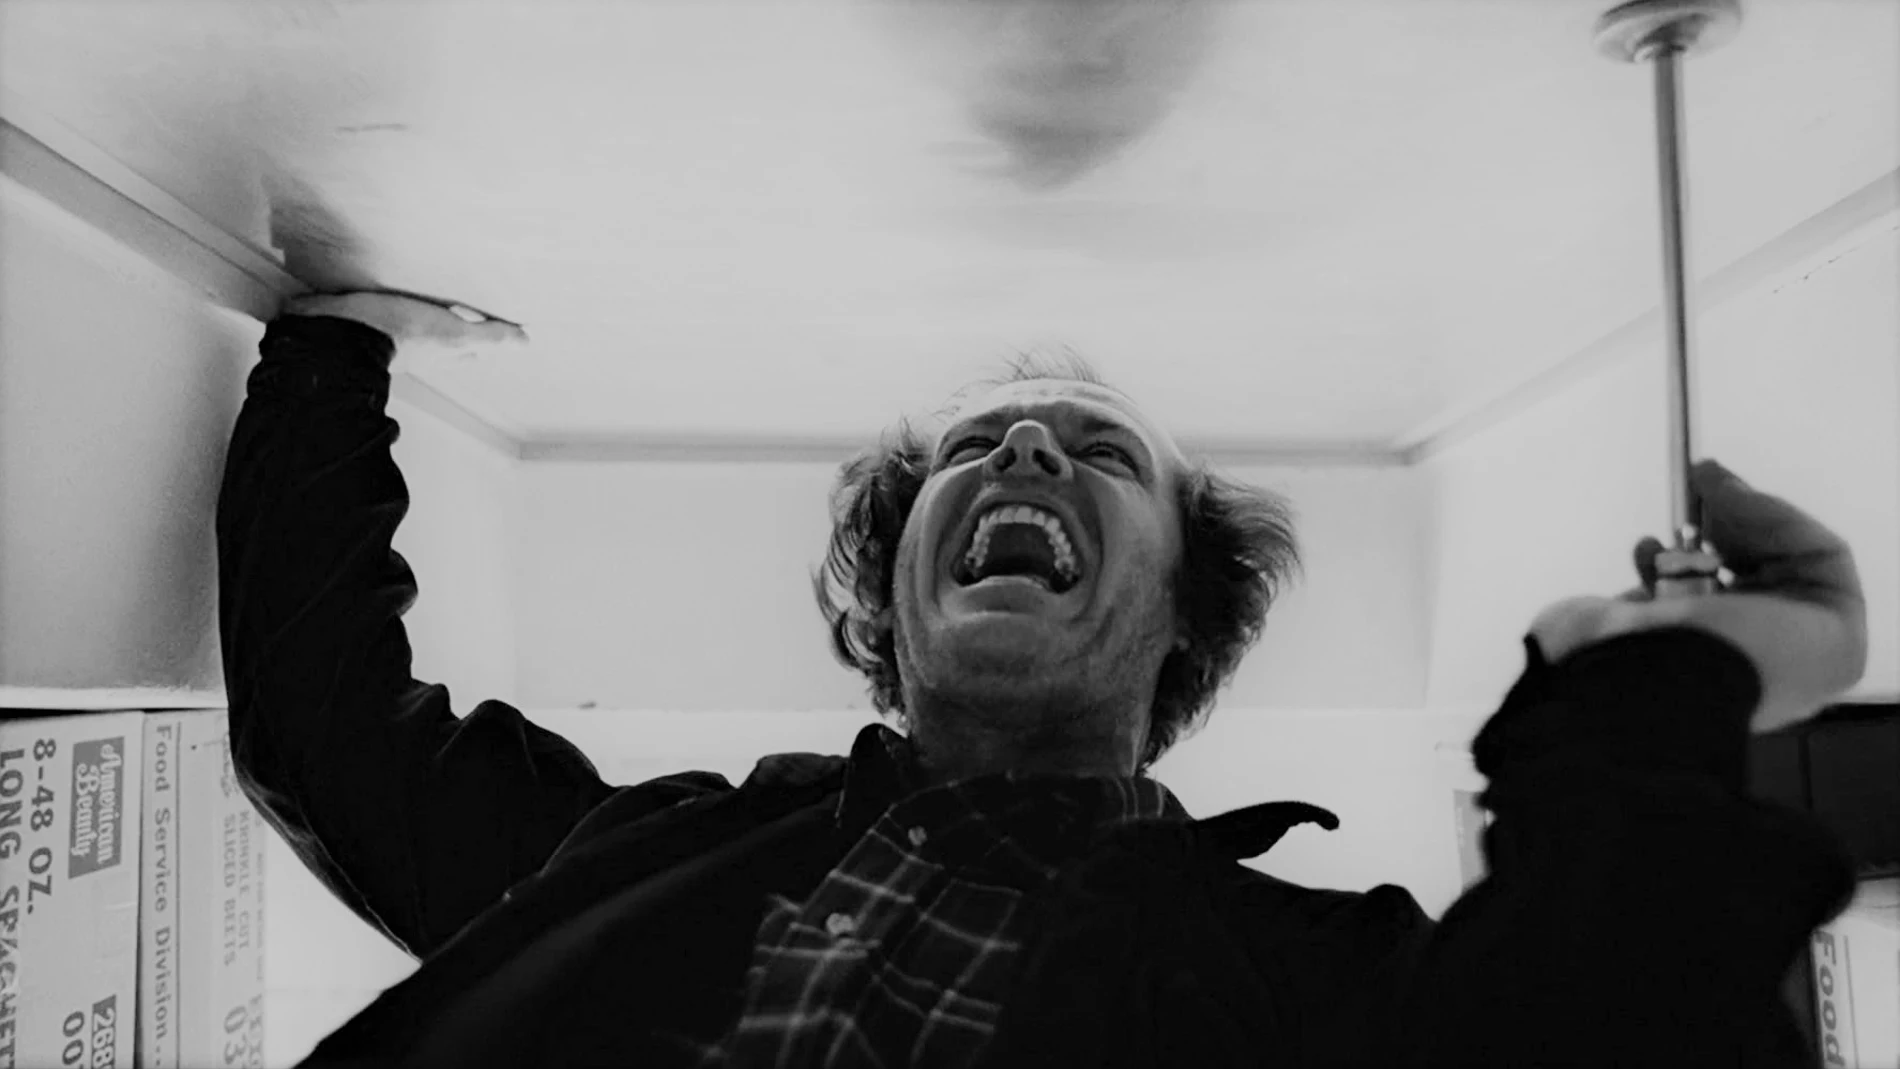 Jack Nicholson en un fotograma de "El resplandor"